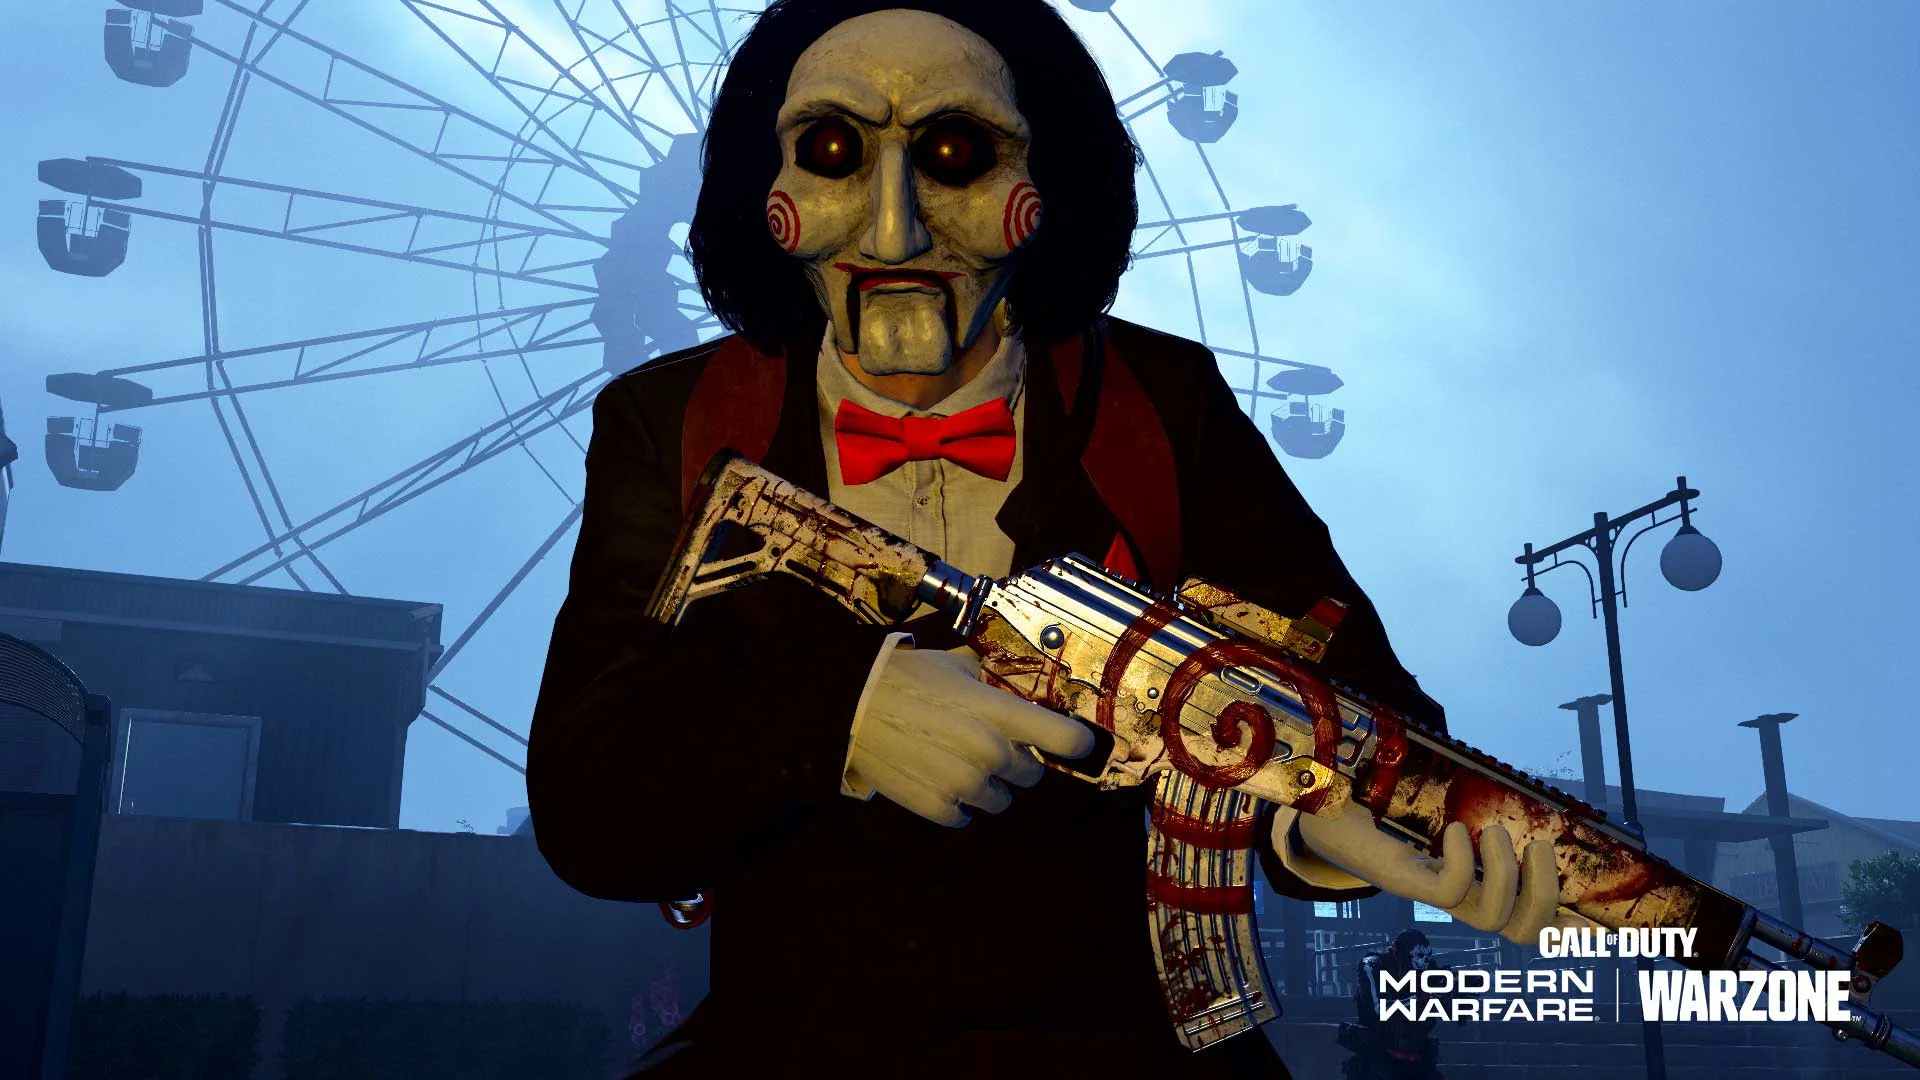 Зомби, ночь, «Пила»: 20 октября в Call of Duty: Warzone начинается Хэллоуин - фото 1